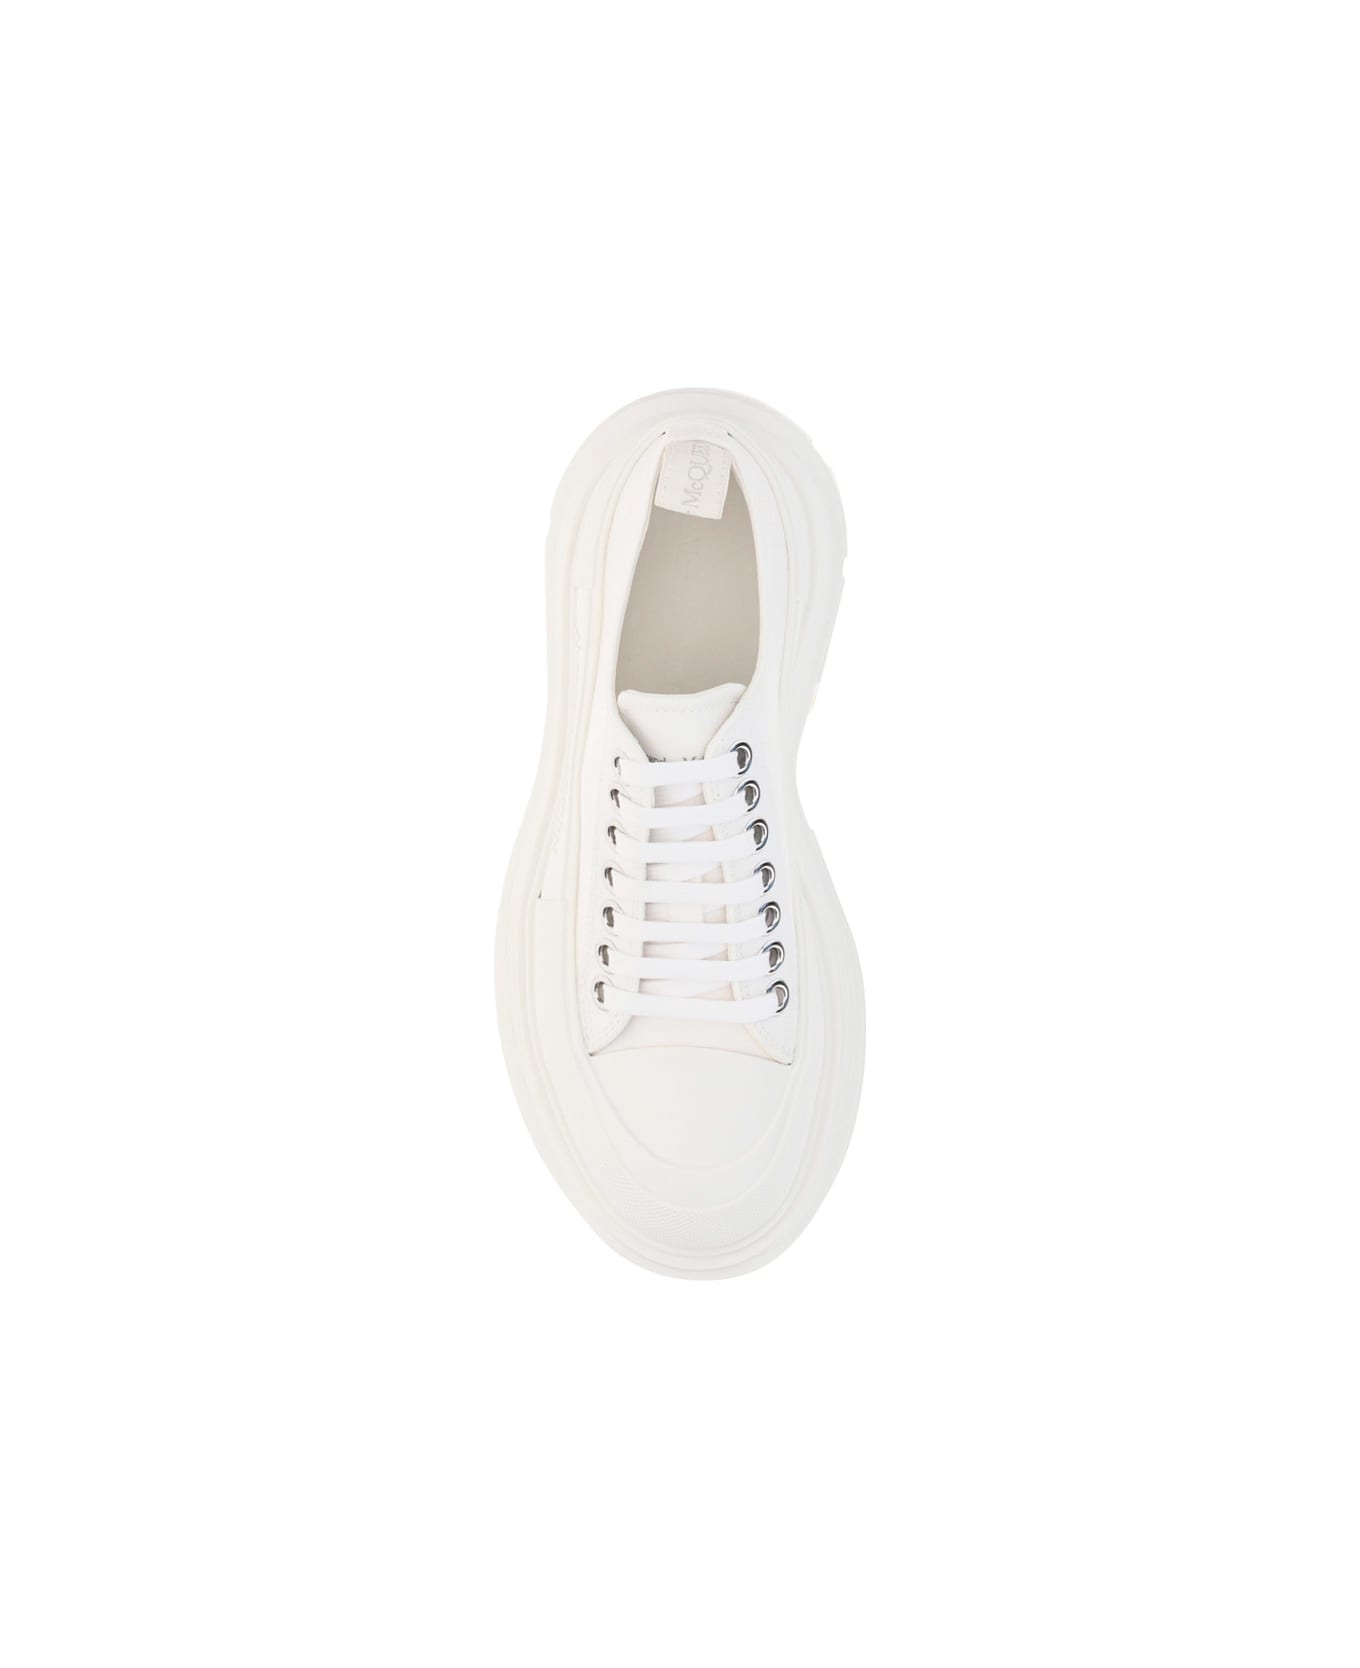 Alexander McQueen Tread Slick Sneaker - White/white スニーカー